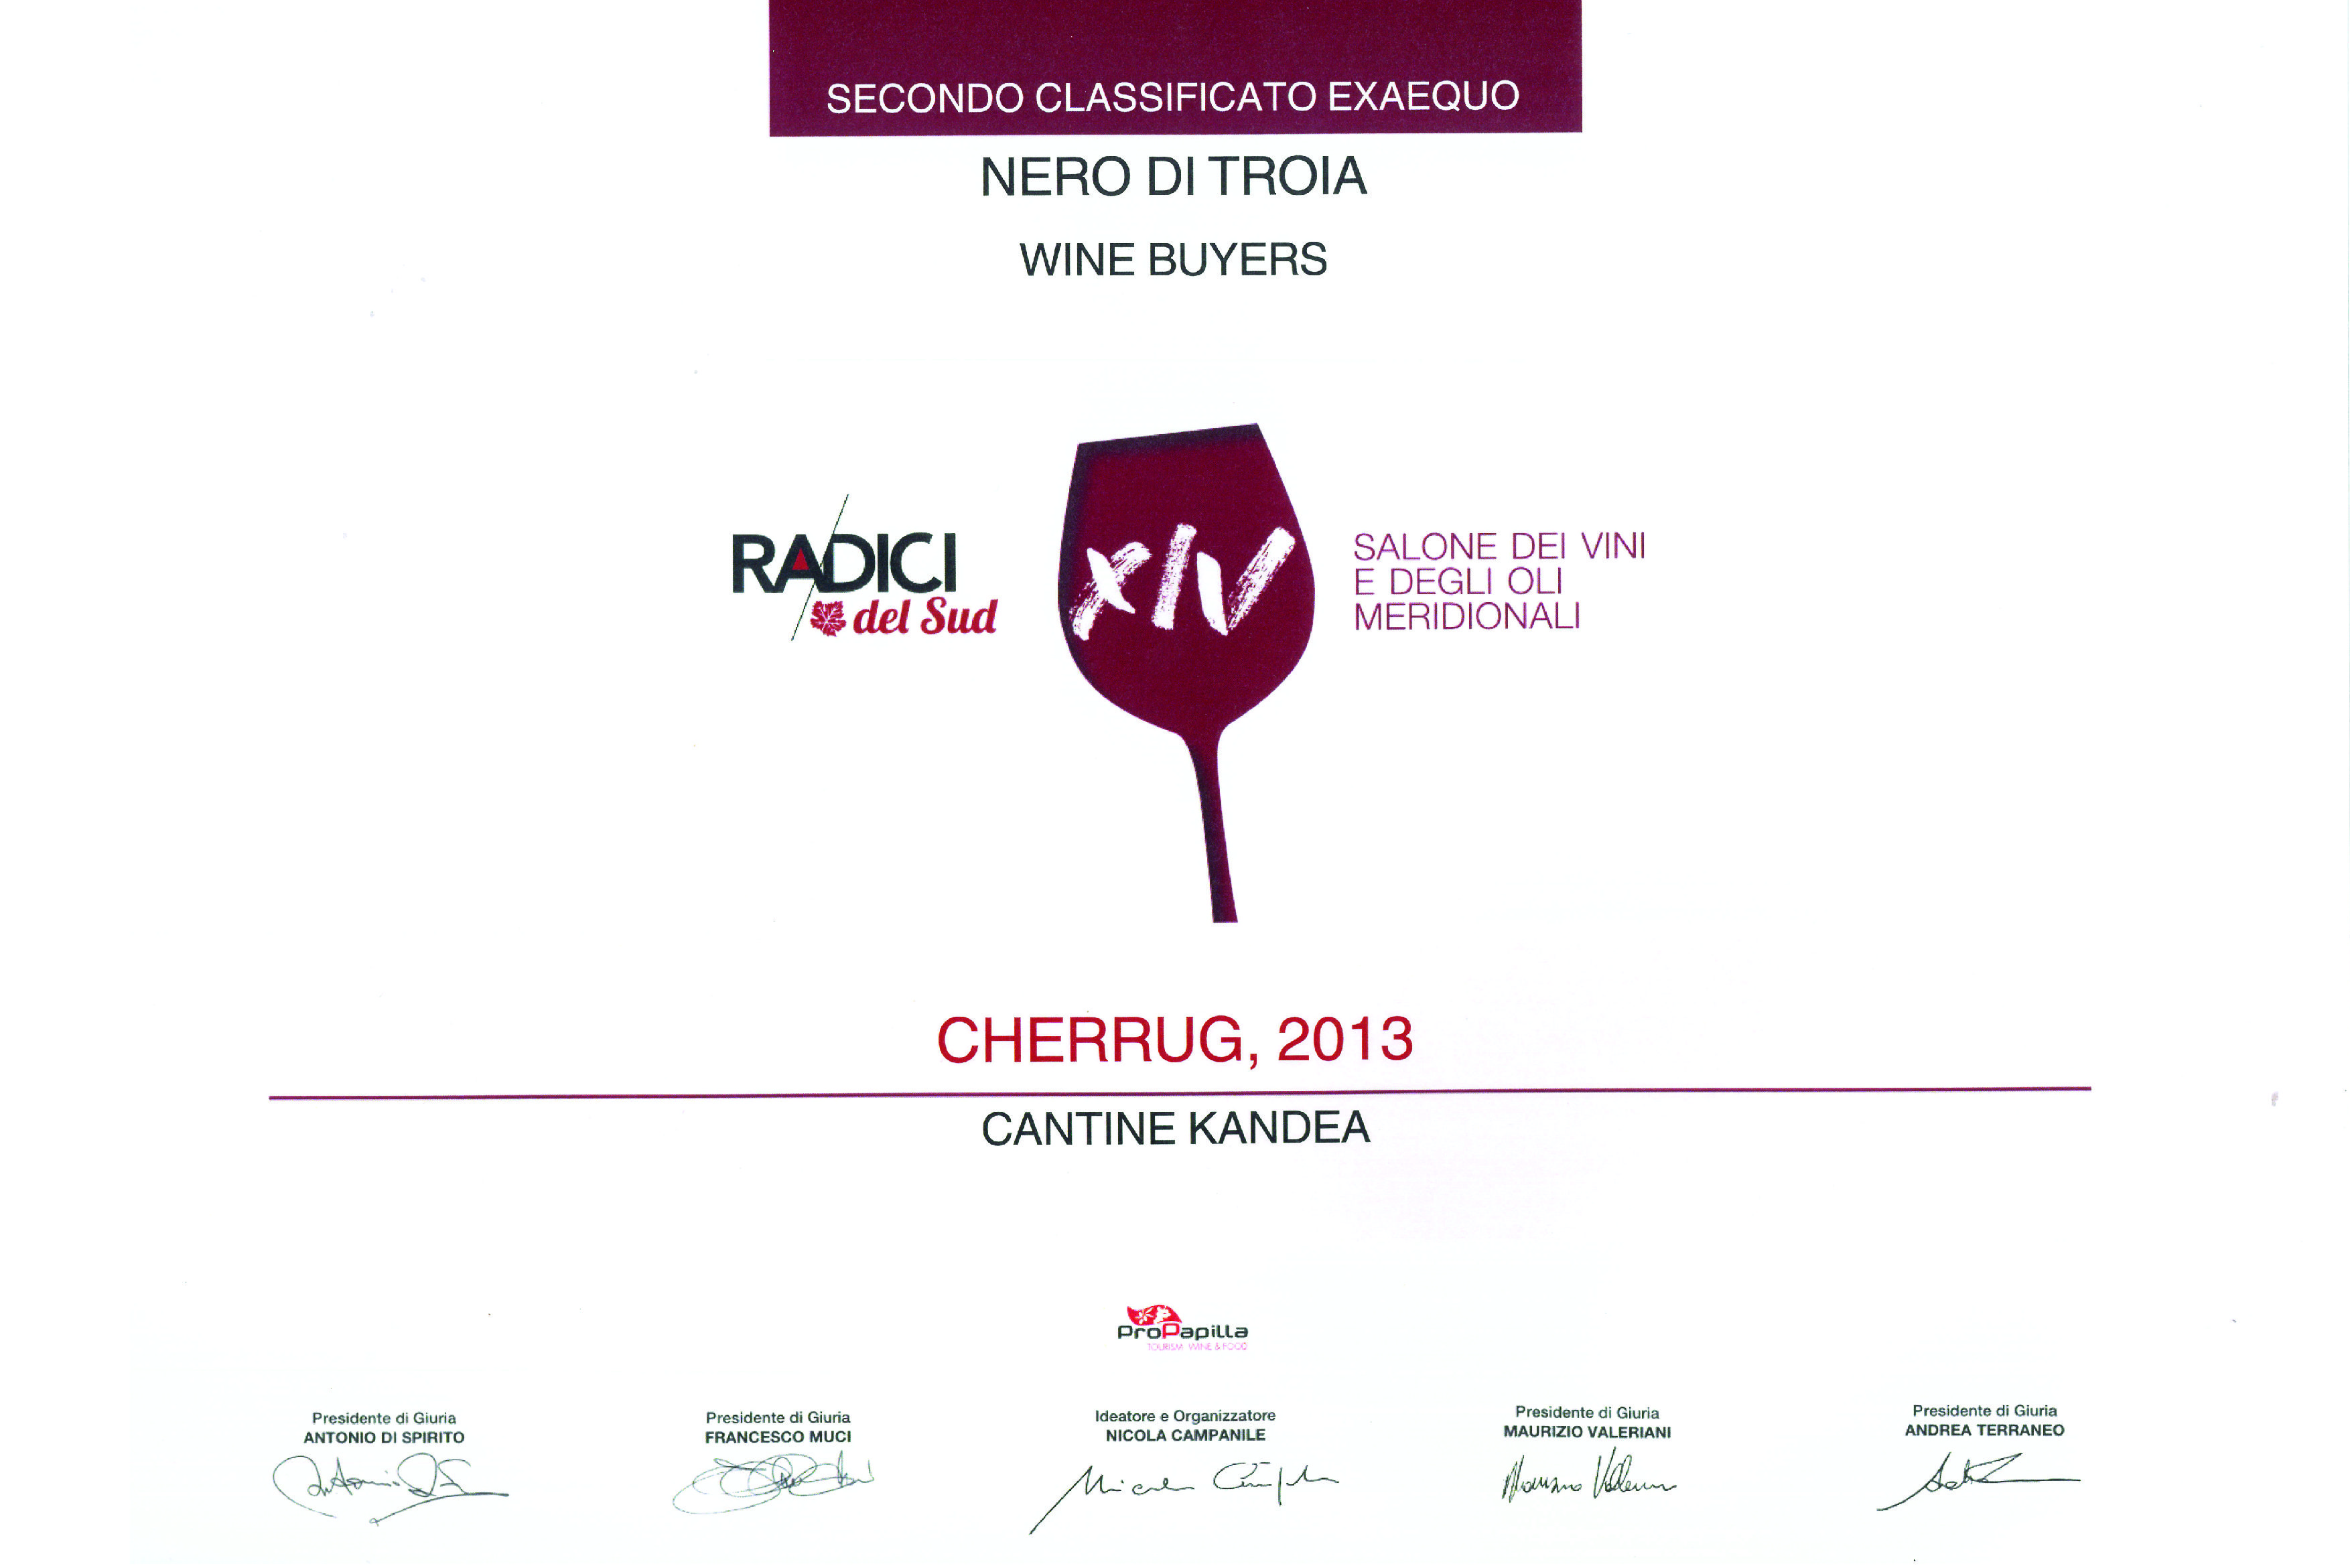 CHERRUG 2013 - 1° vino premiato RADICI 2019